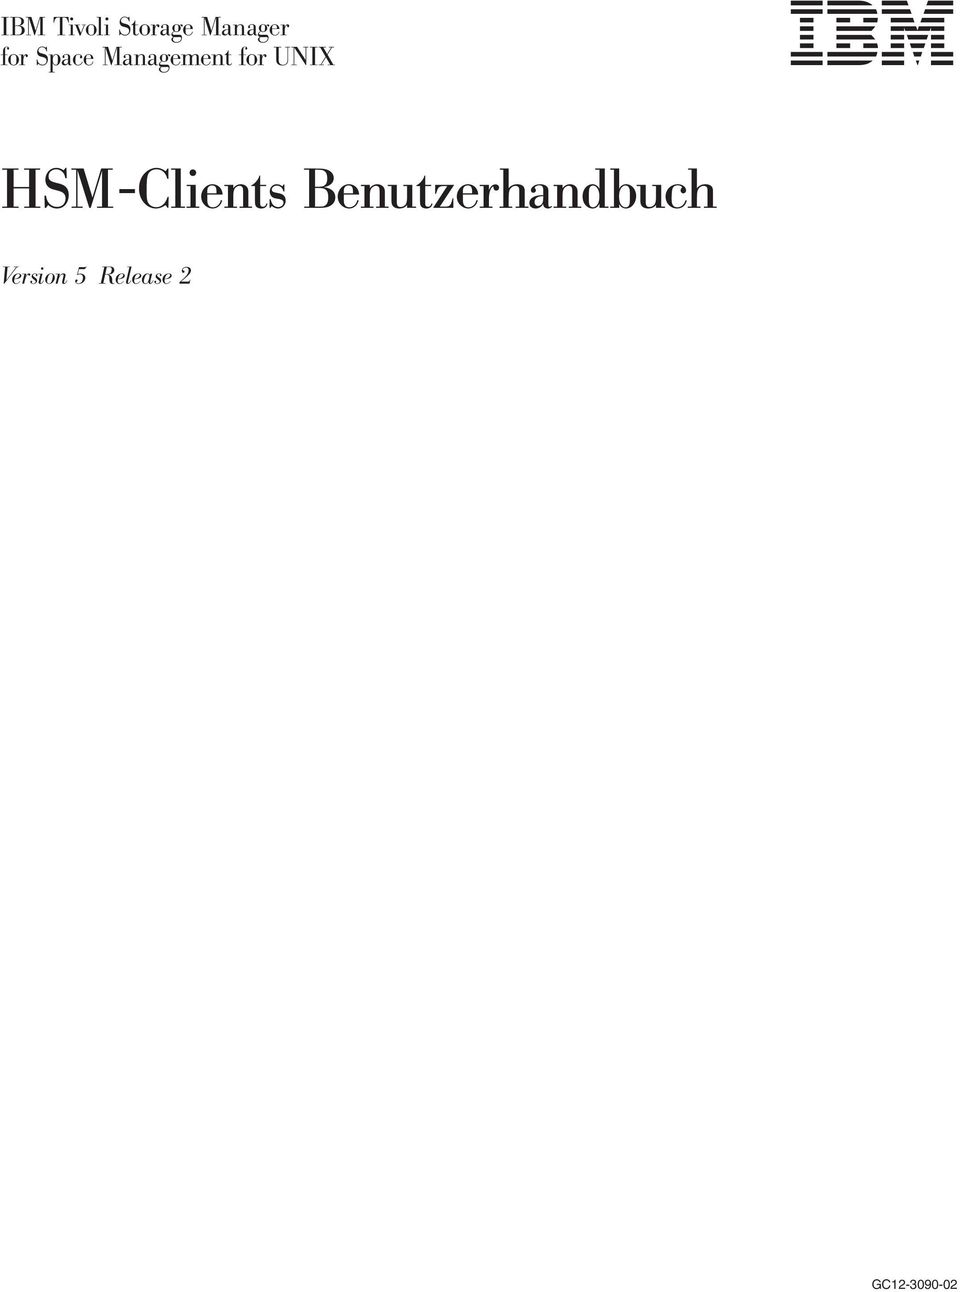 HSM-Clients Benutzerhandbuch